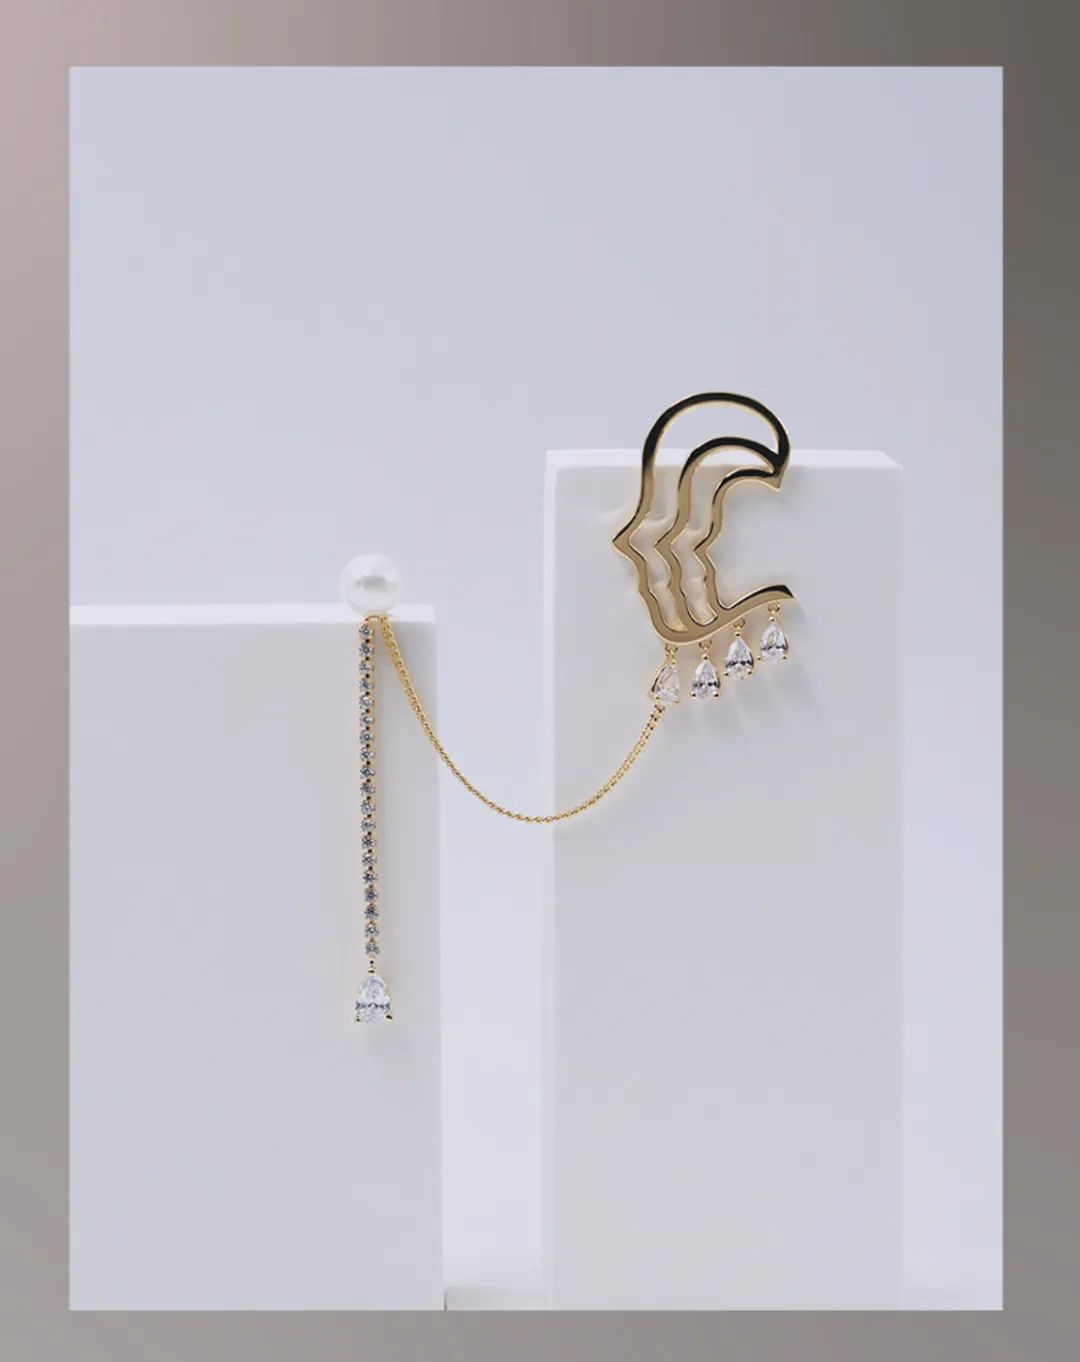 歐洲設計界「奧斯卡獎」得主95後珠寶設計師劉宜蘭對珠寶流行趨勢的洞見 家居 第3張